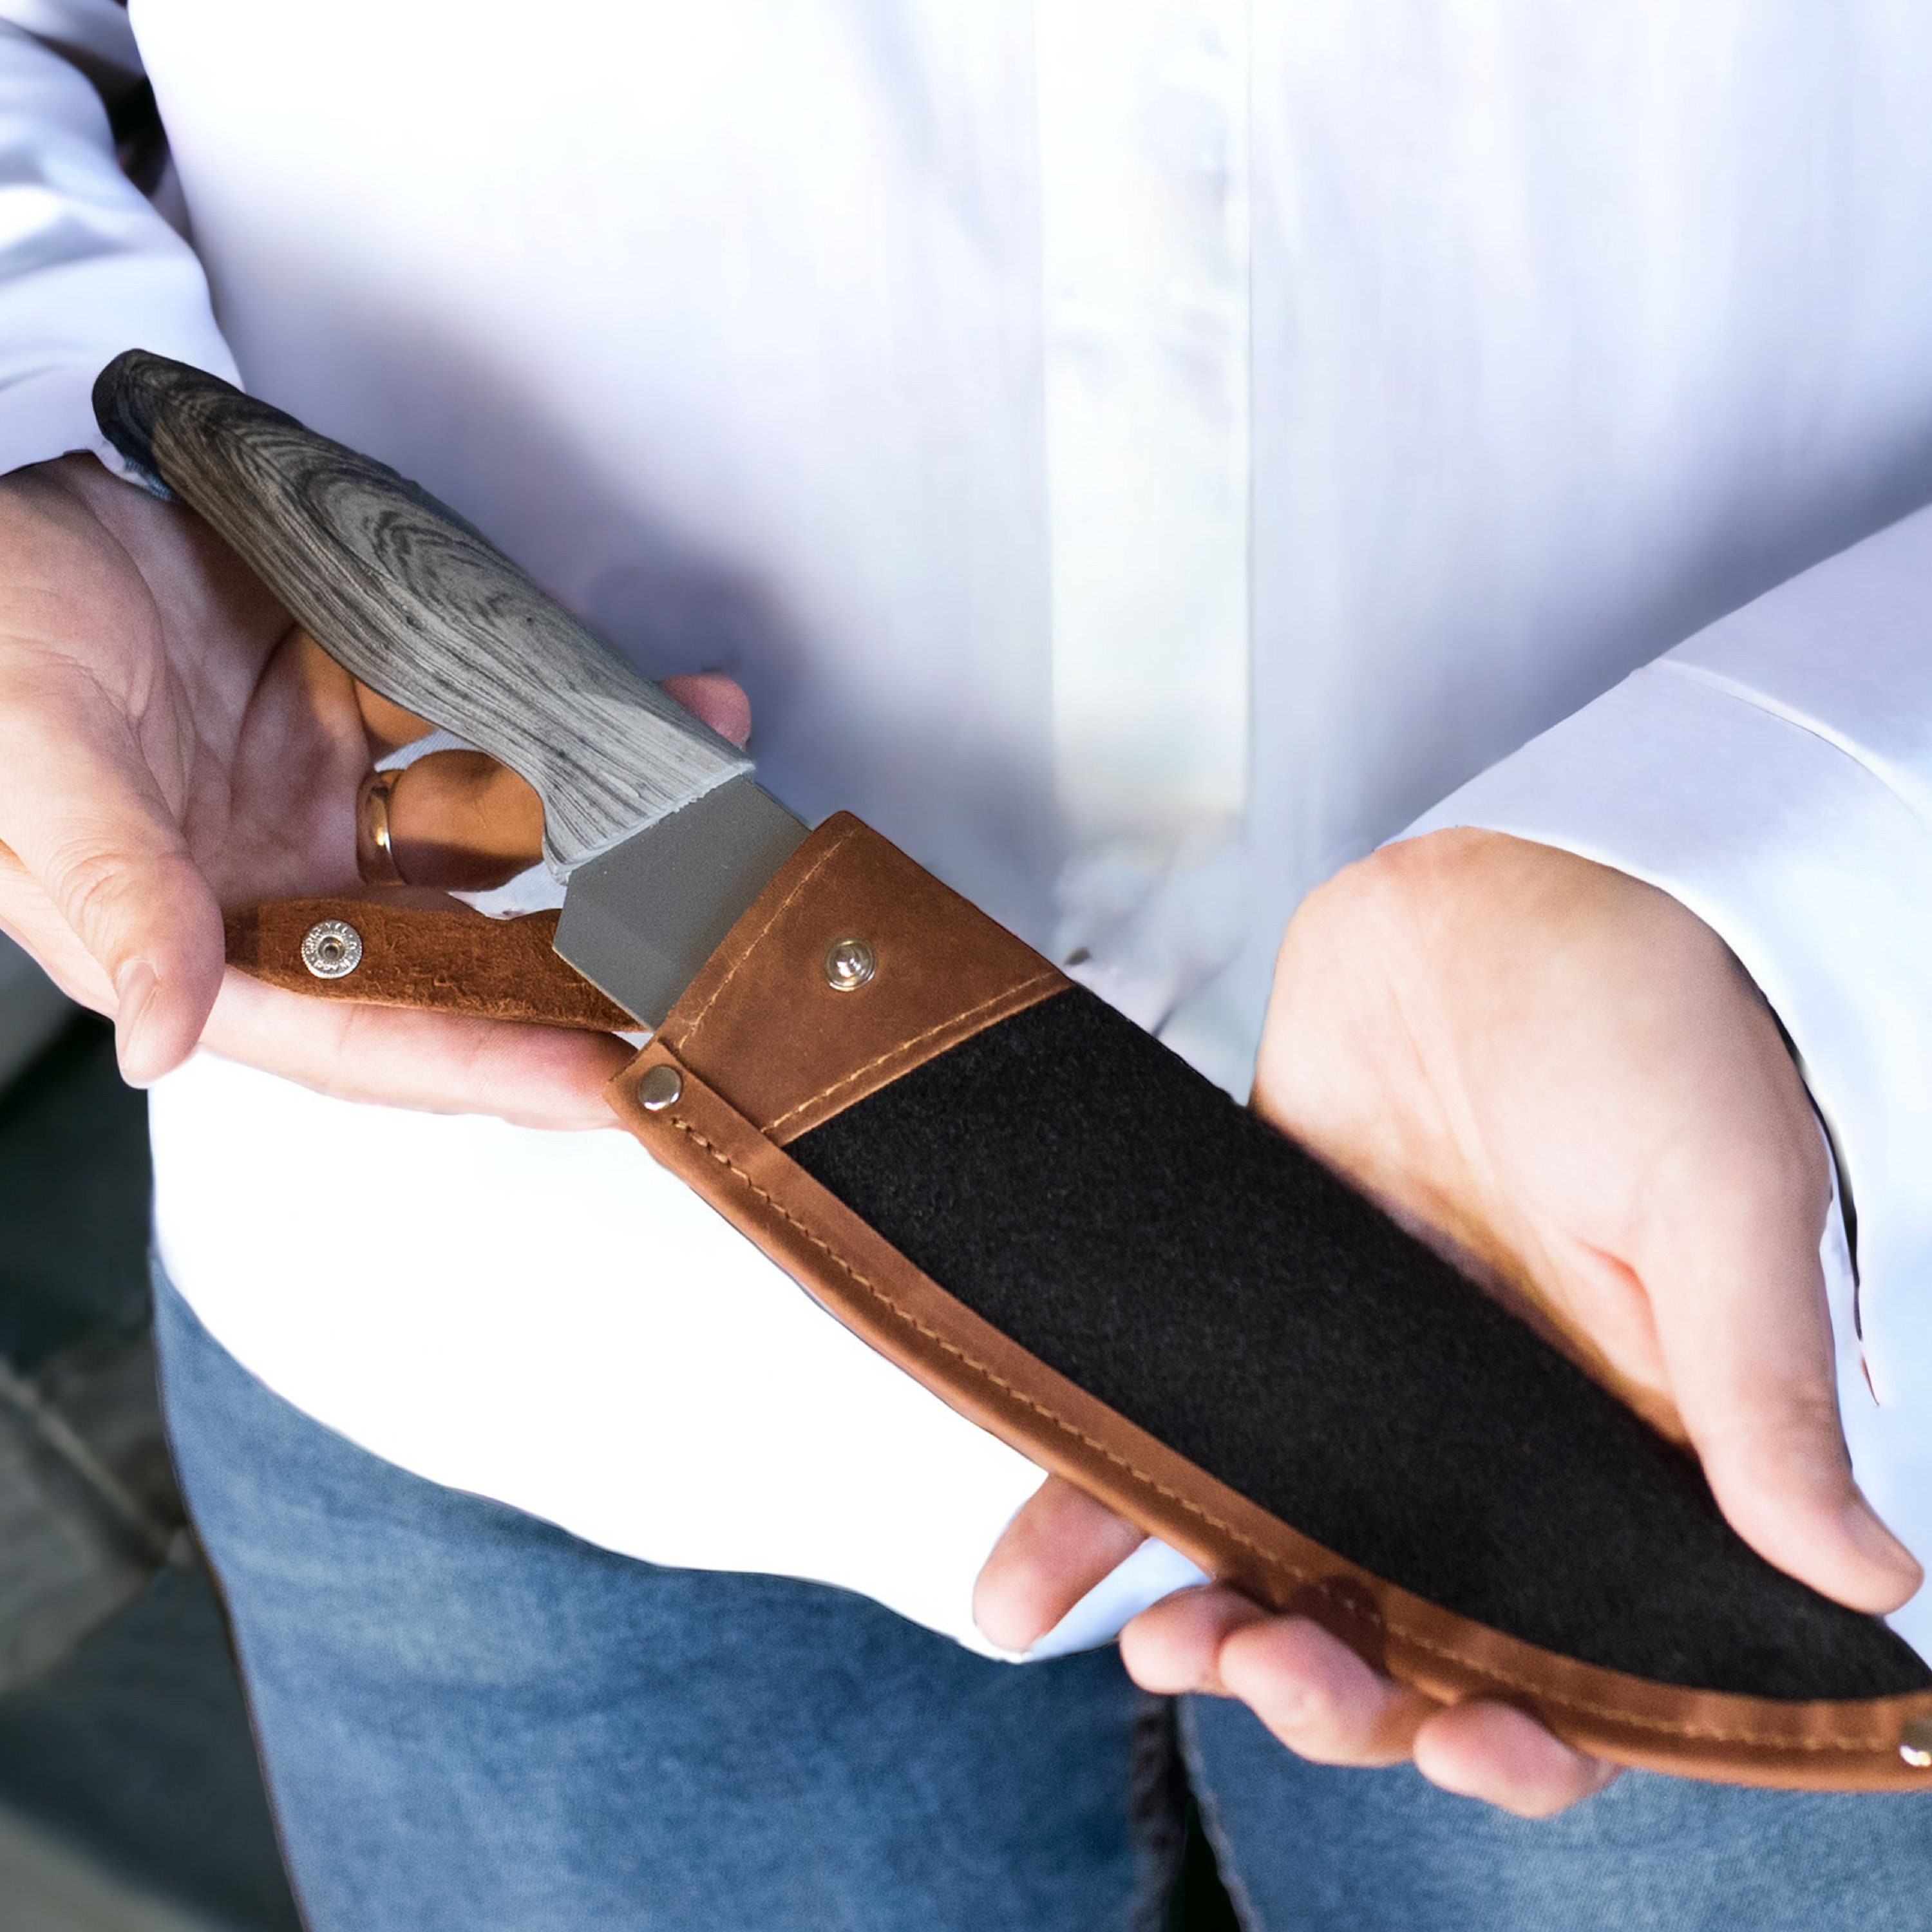 Chef knife sheath with a locking strap : r/Leathercraft